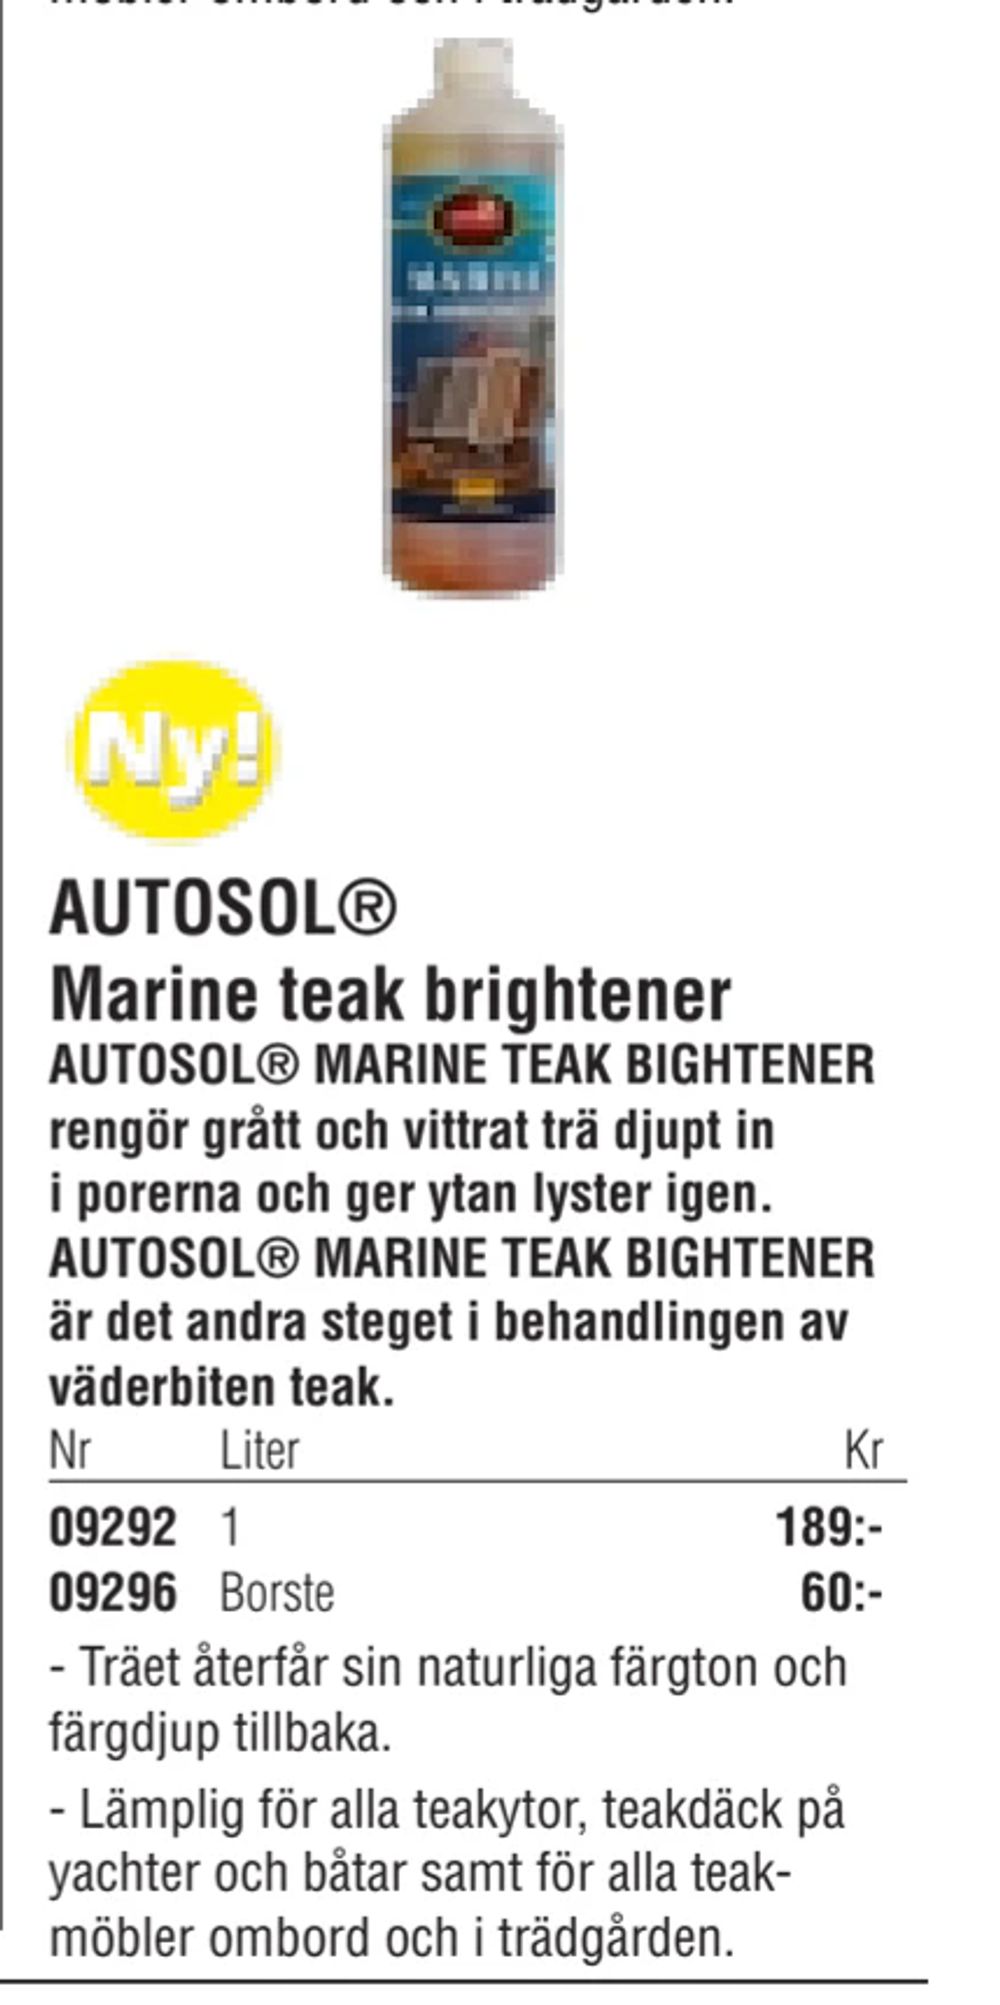 Erbjudanden på AUTOSOL® Marine teak brightener från Erlandsons Brygga för 60 kr